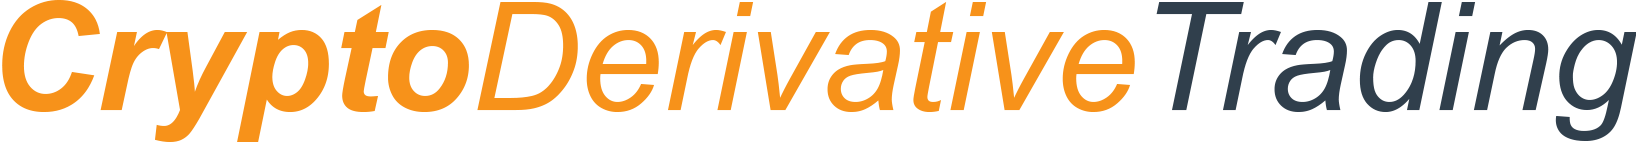 Logotipo de cryptoderivatives